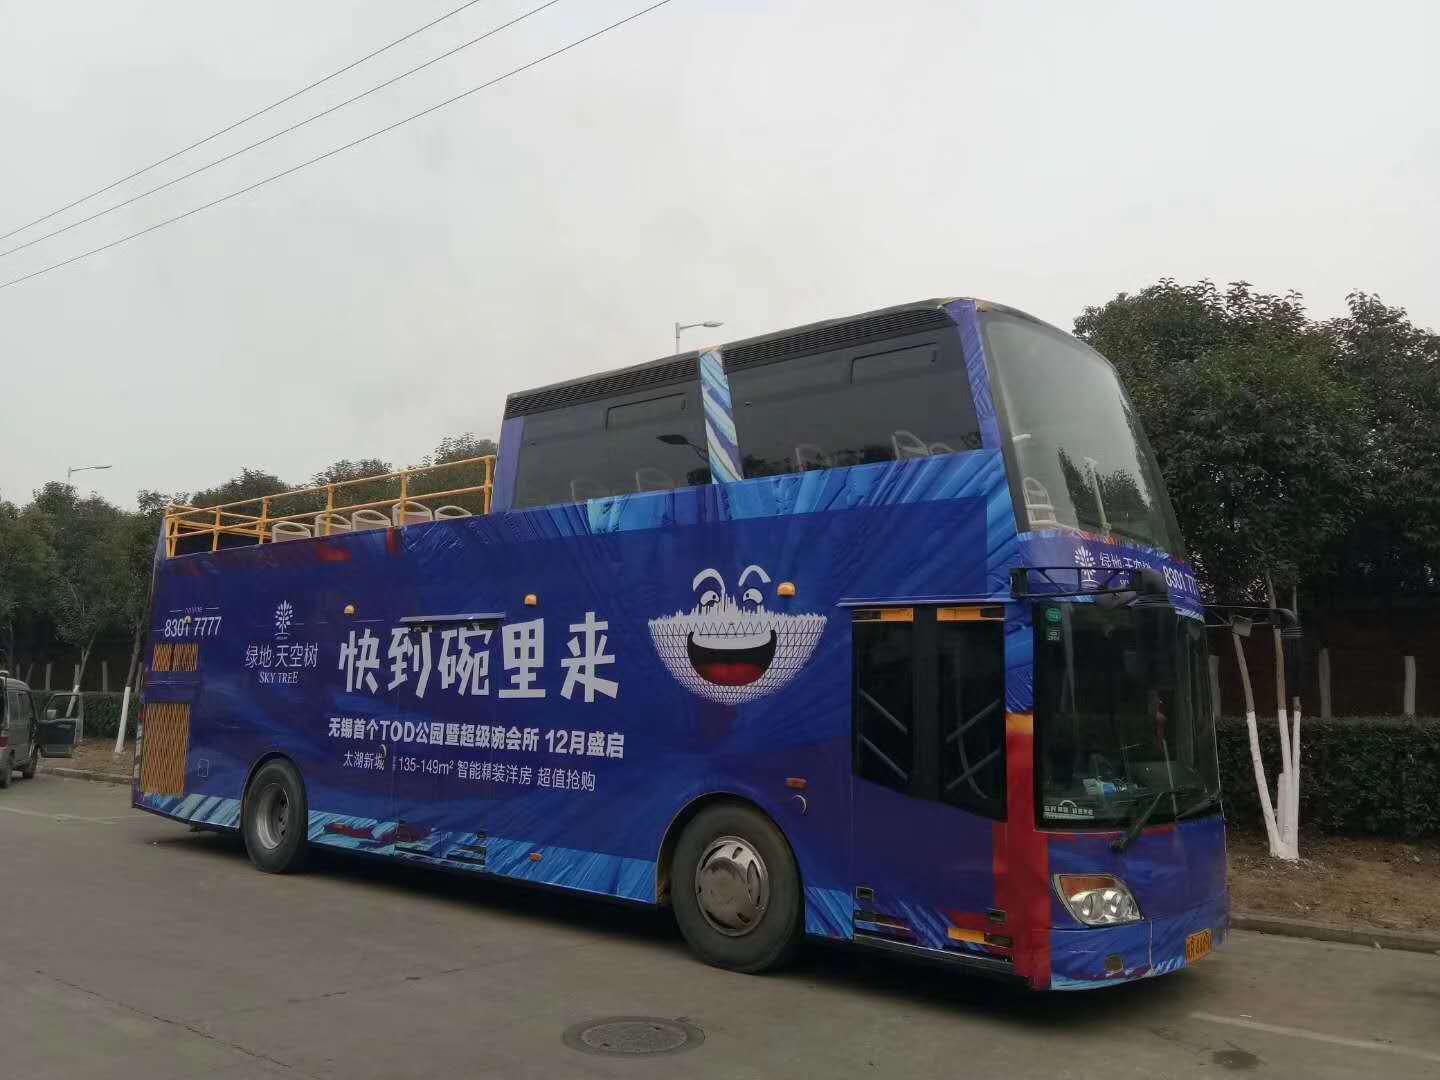 全新观光双层巴士互动巡游设备展览图片